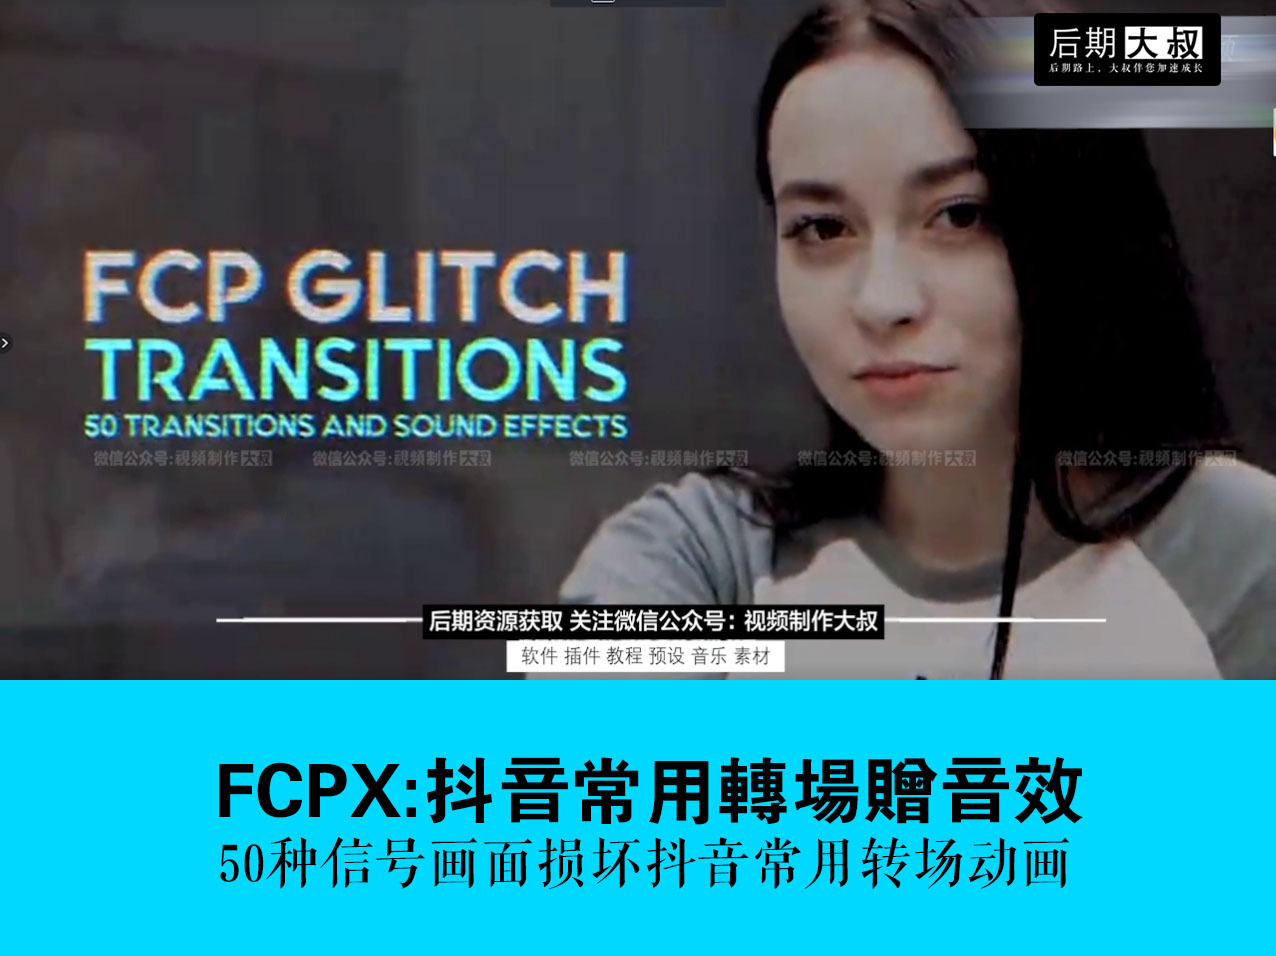 FCPX预设:抖音同款无缝转场插件赠音效,燃爆您的小视频没商量